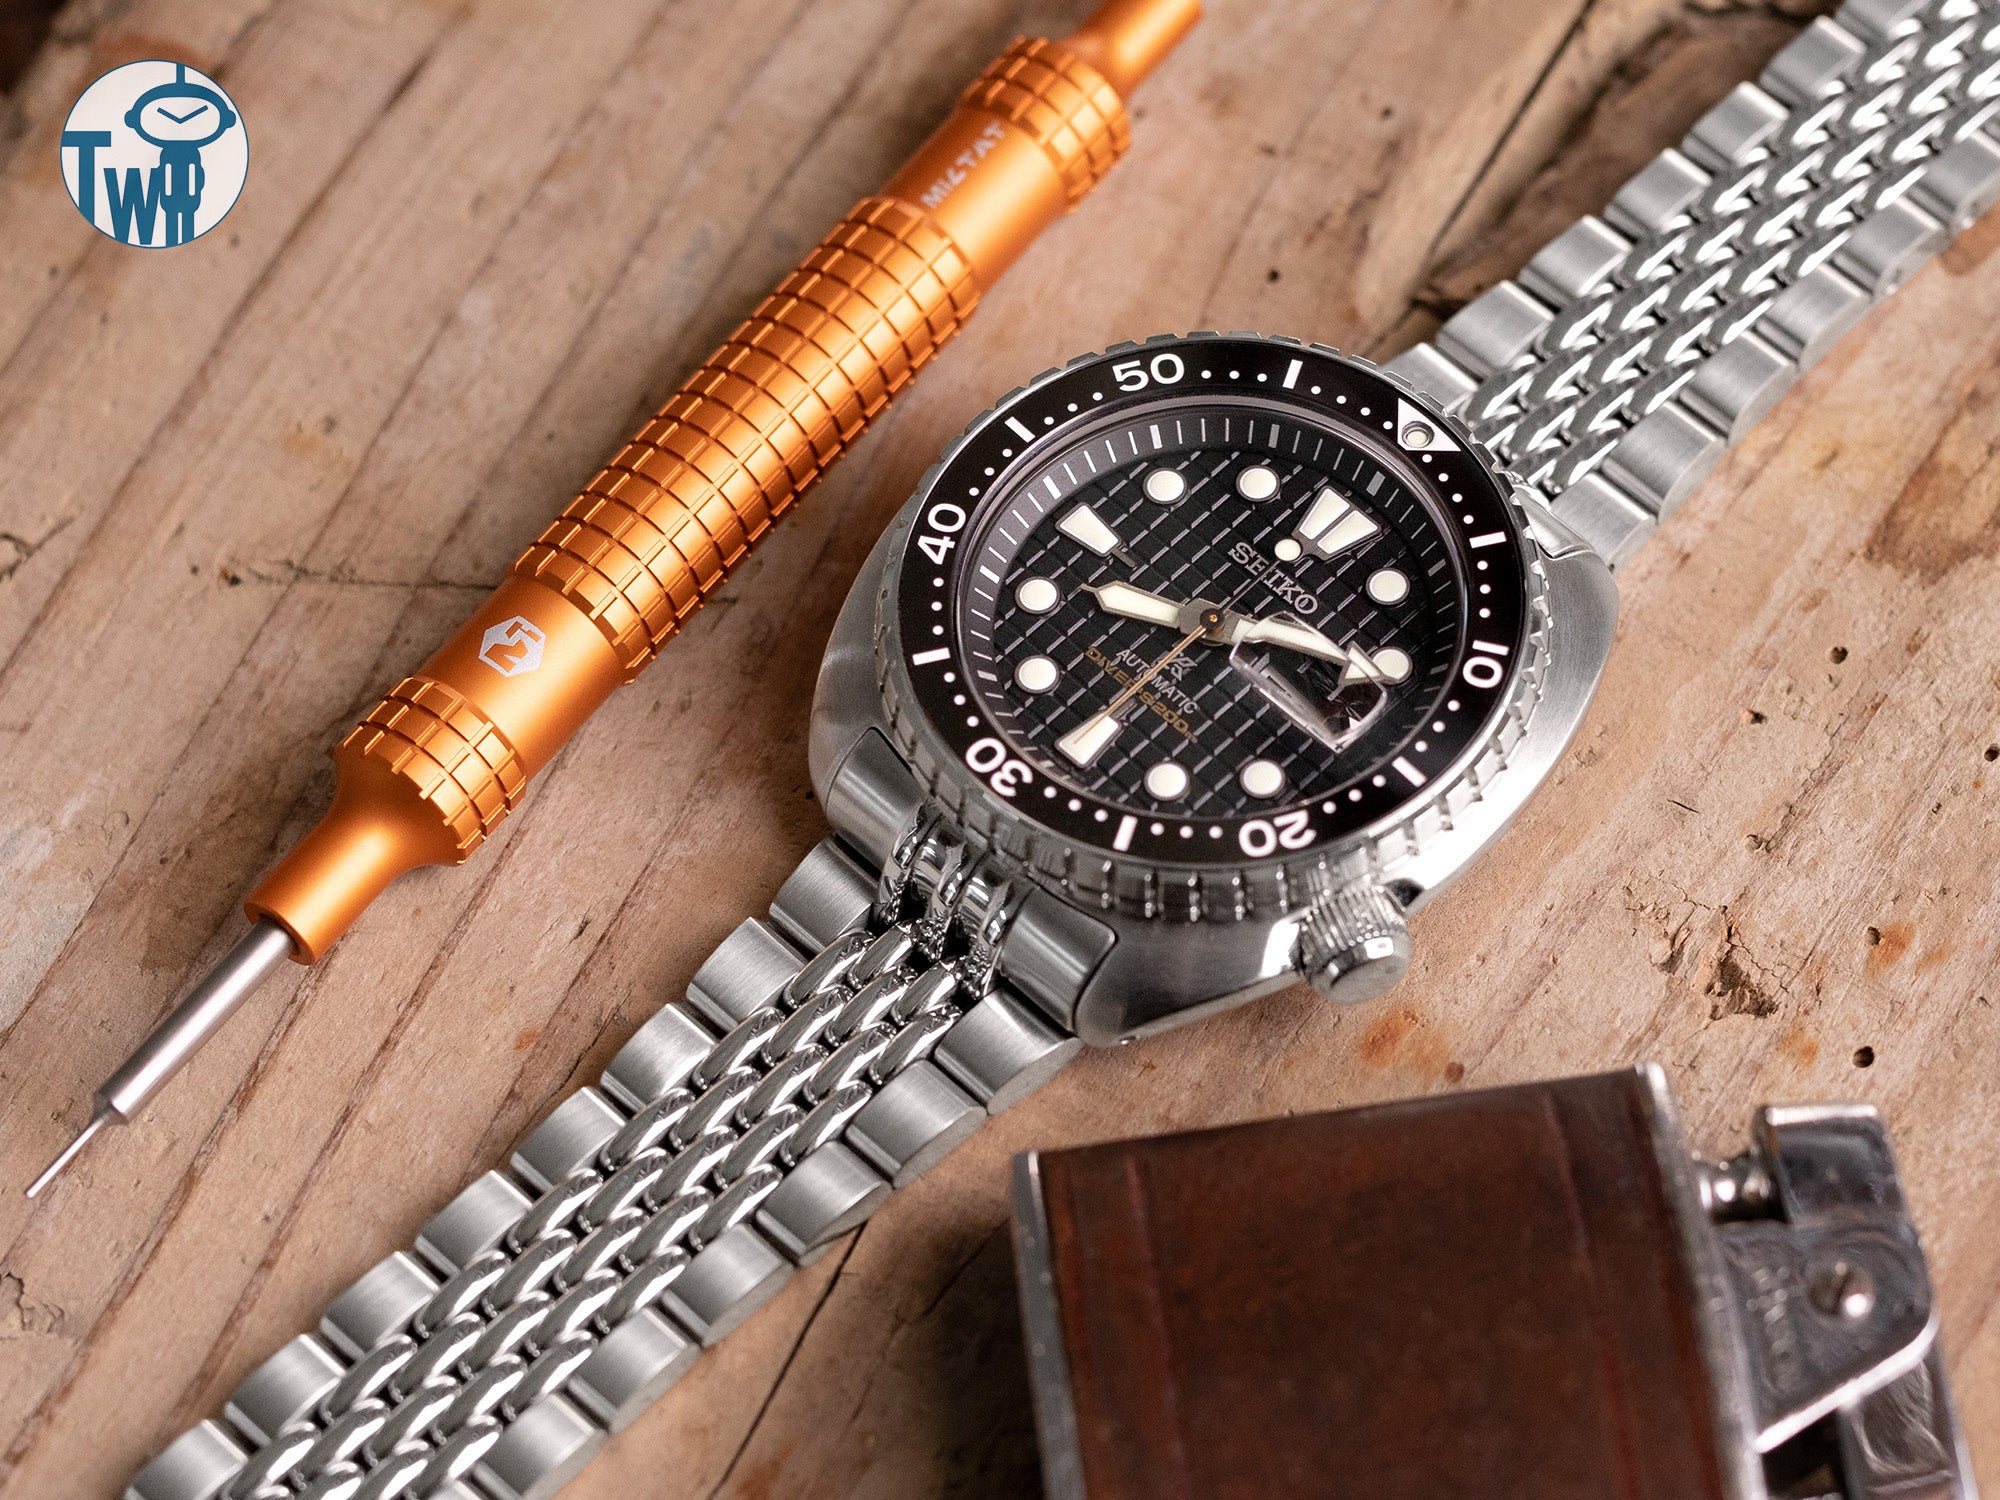 Seiko精工 王者鮑魚 SRPE03 的桶形錶殼手錶 搭配 太空人腕時計TW 不鏽鋼錶帶。